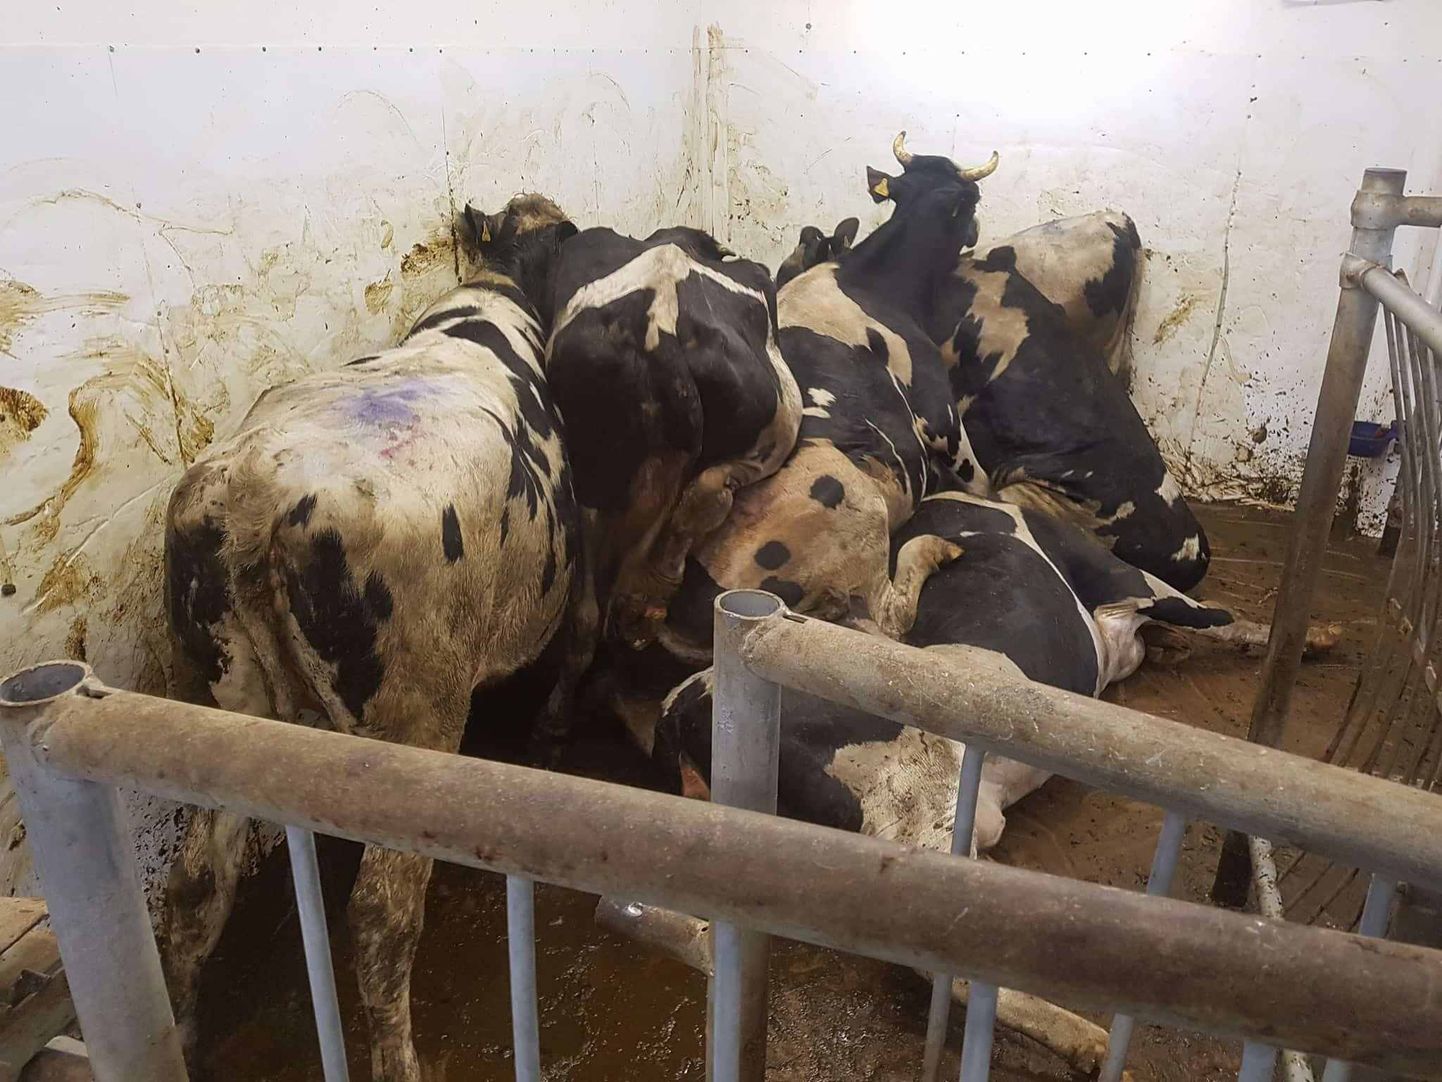 Karjamõisa lihatööstuse tapamaja endine töötaja avaldas pildid kabuhirmus üksteise otsas turninud veistest, väites, et loomad peavad seal enne hukkamist piinlema.